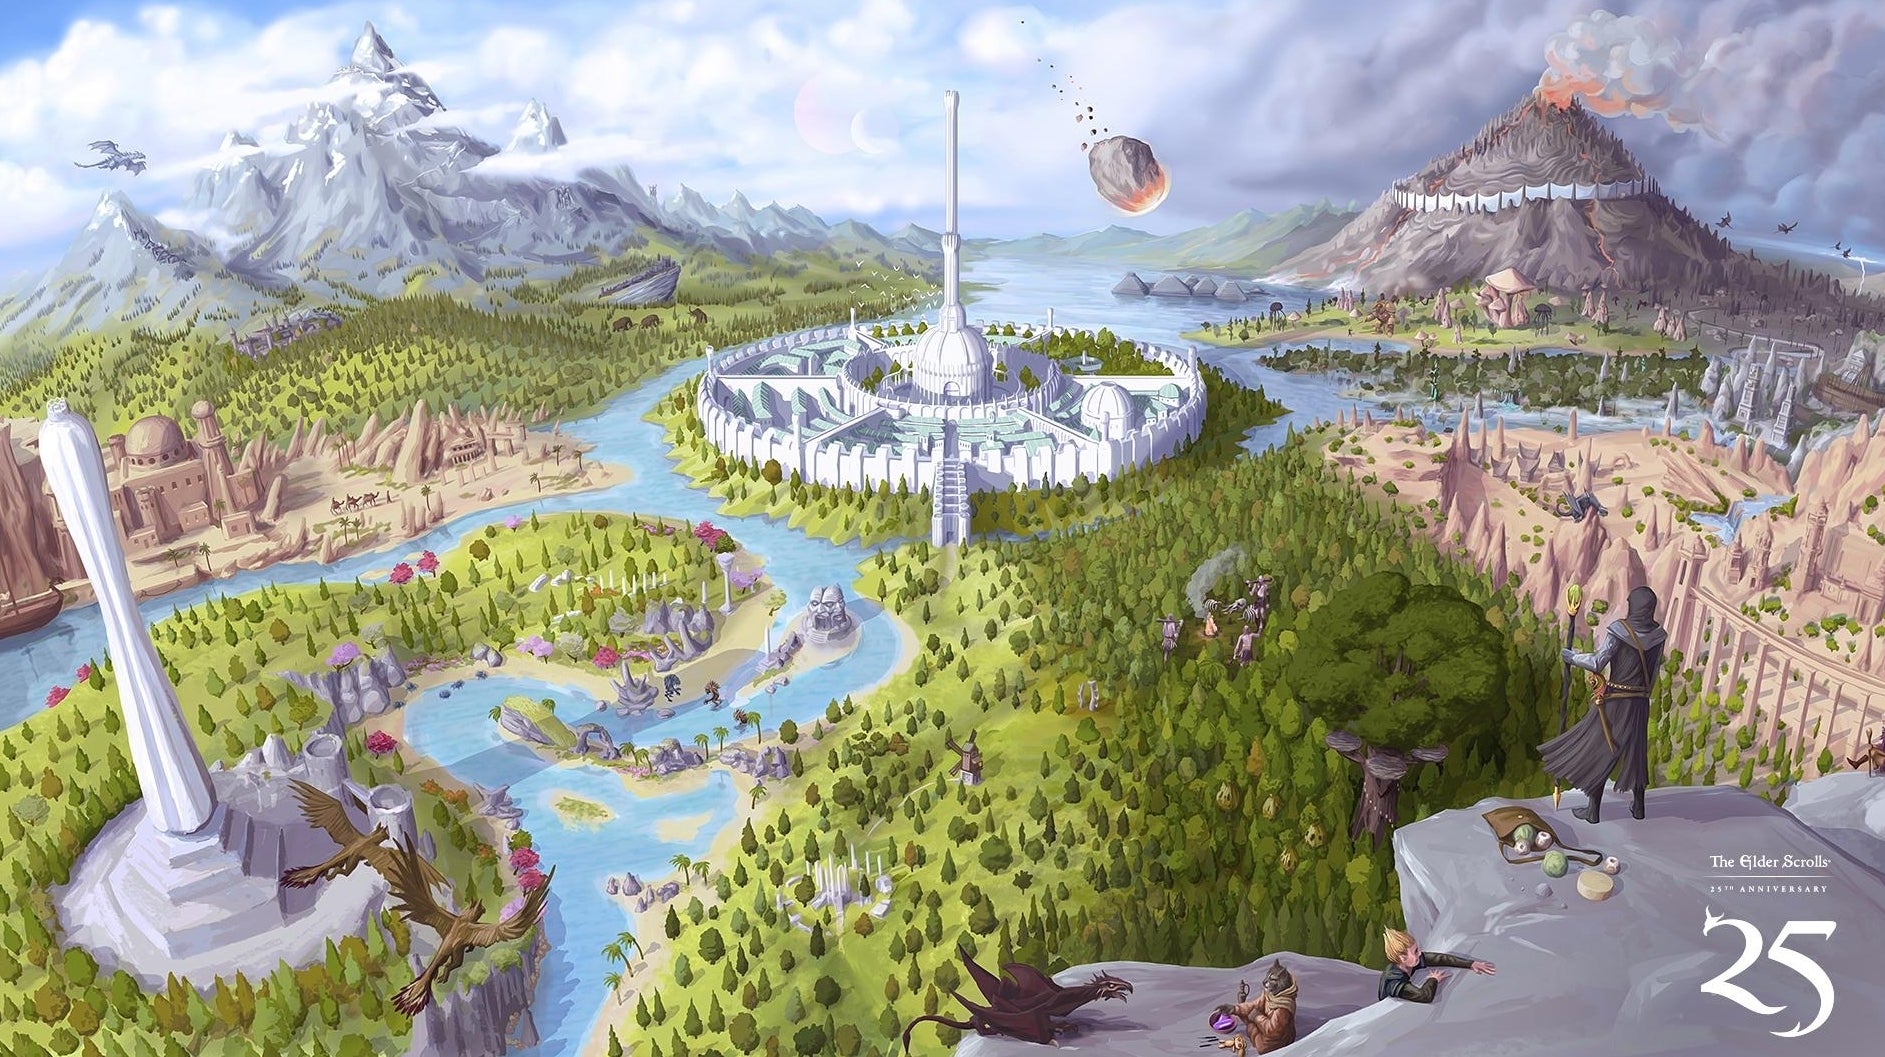 Imagen para Morrowind está disponible gratis para celebrar el 25 aniversario de The Elder Scrolls